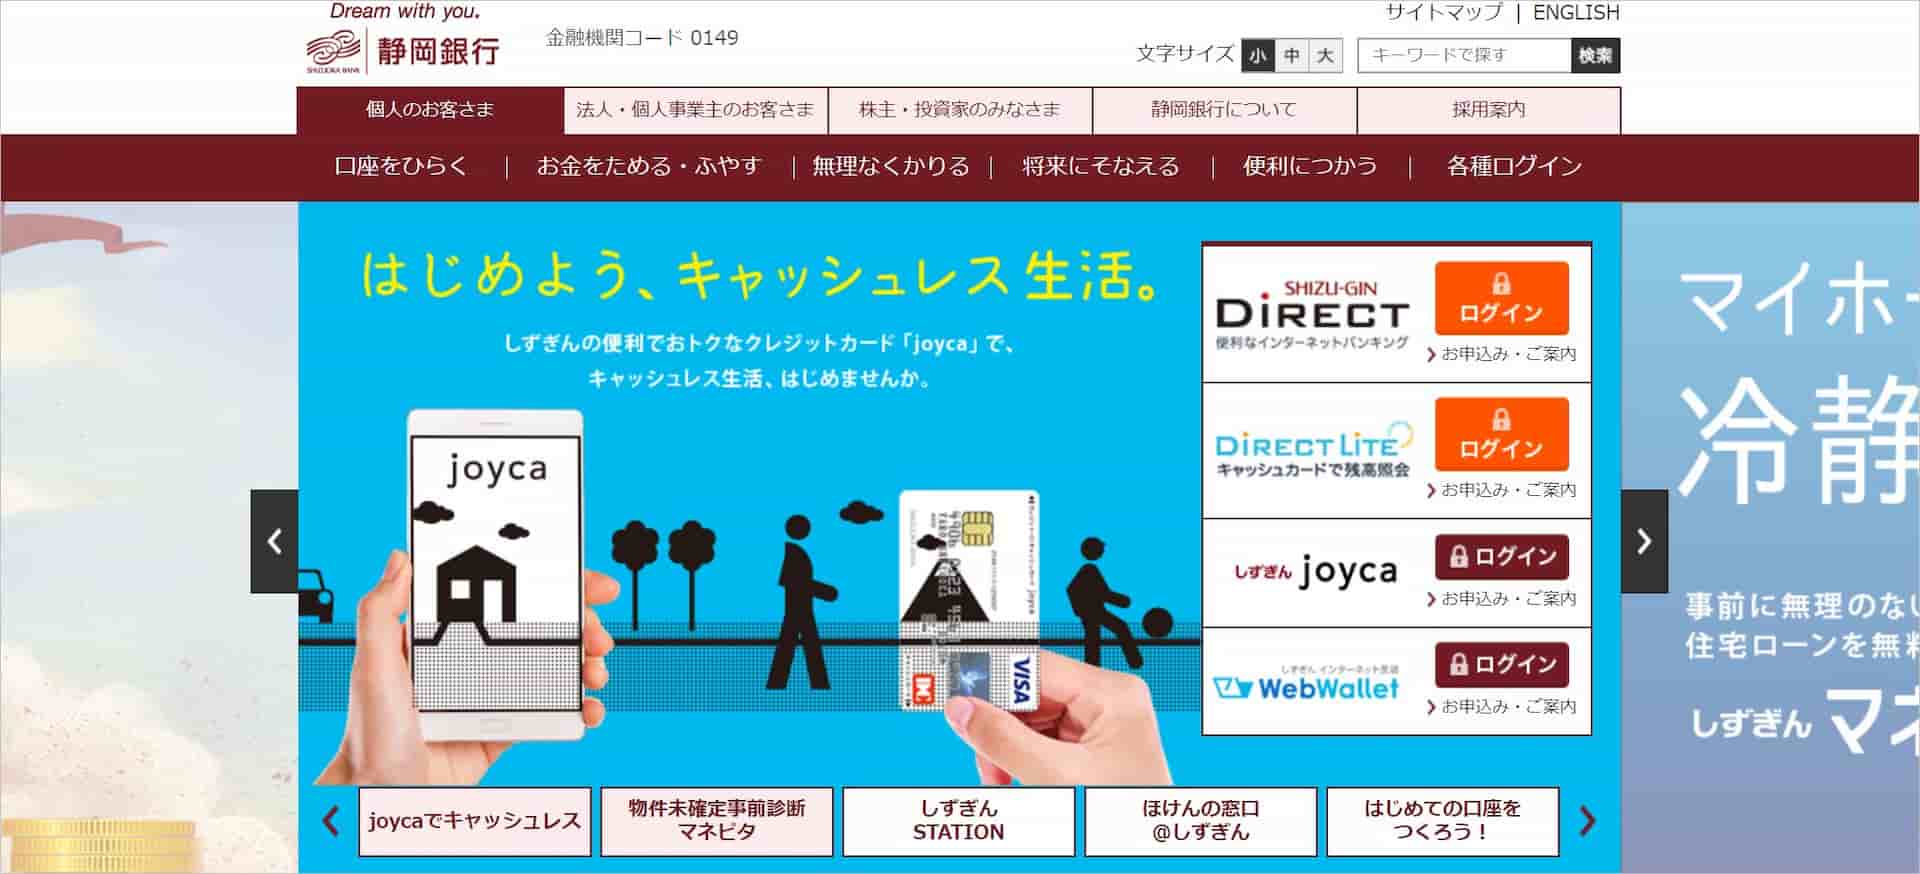 静岡銀行公式ページのトップ画面